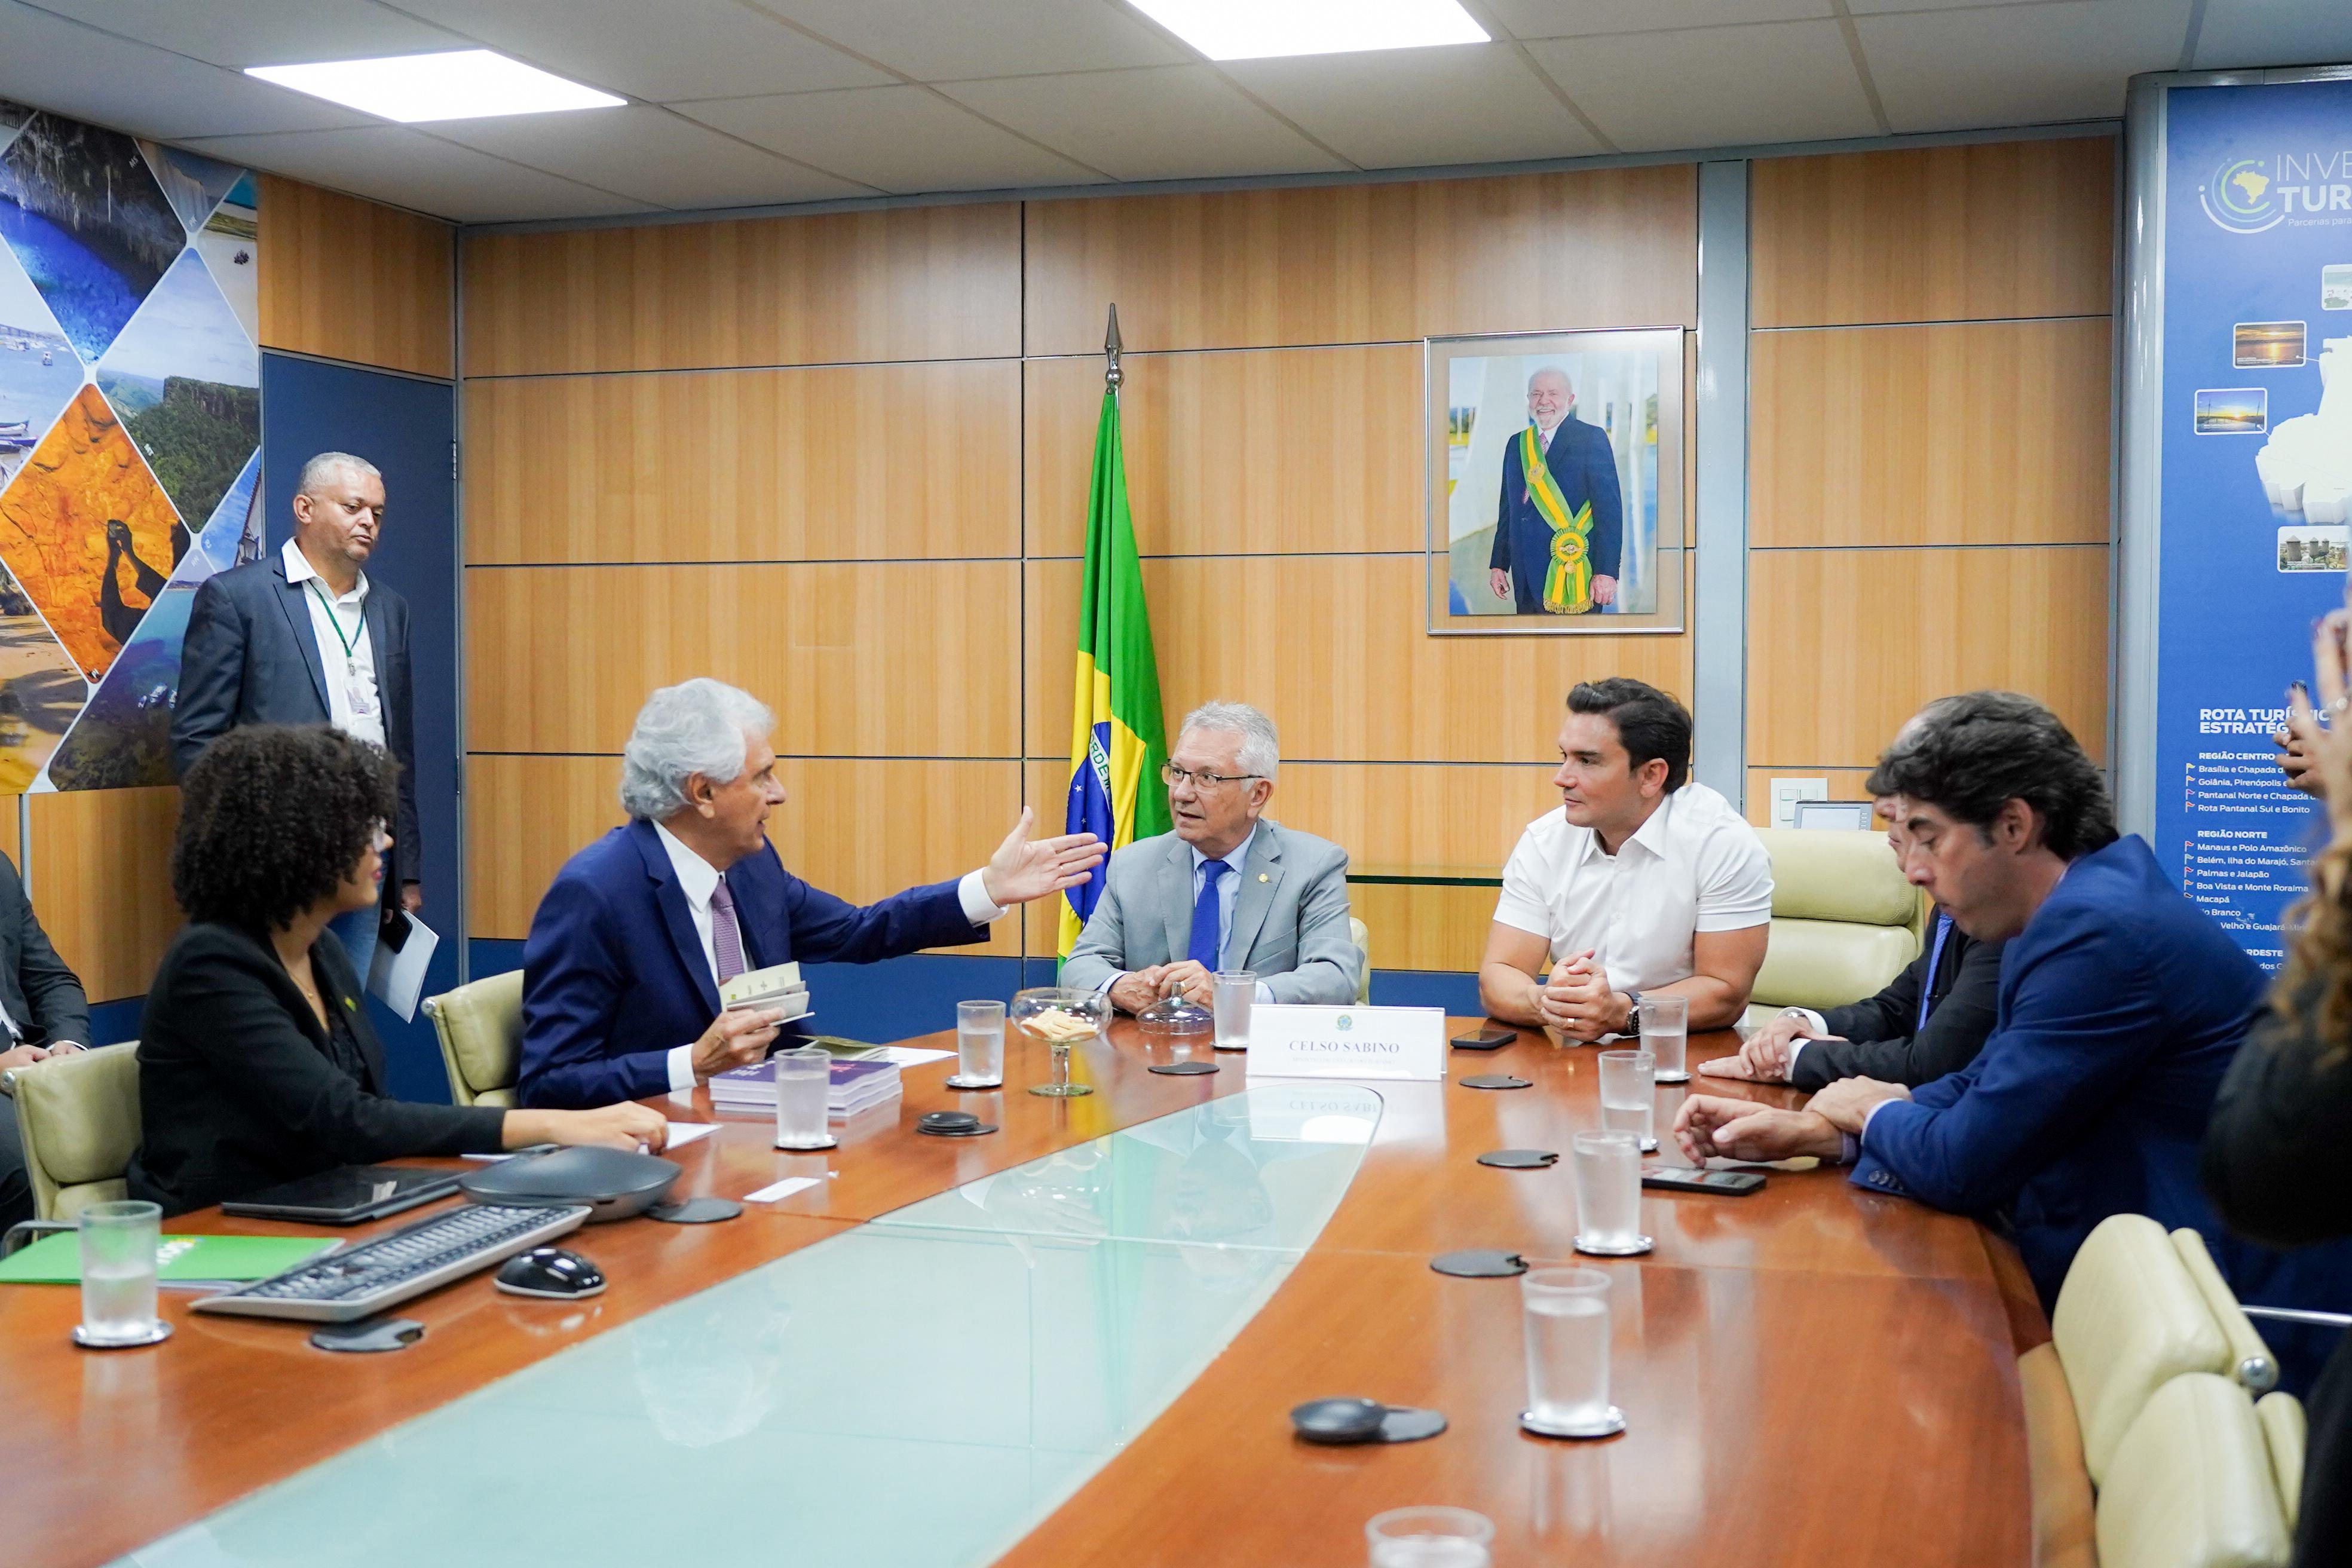 Comitiva de Goiás, encabeçada pelo governador Ronaldo Caiado, apresenta pedidos ao Ministério do Turismo